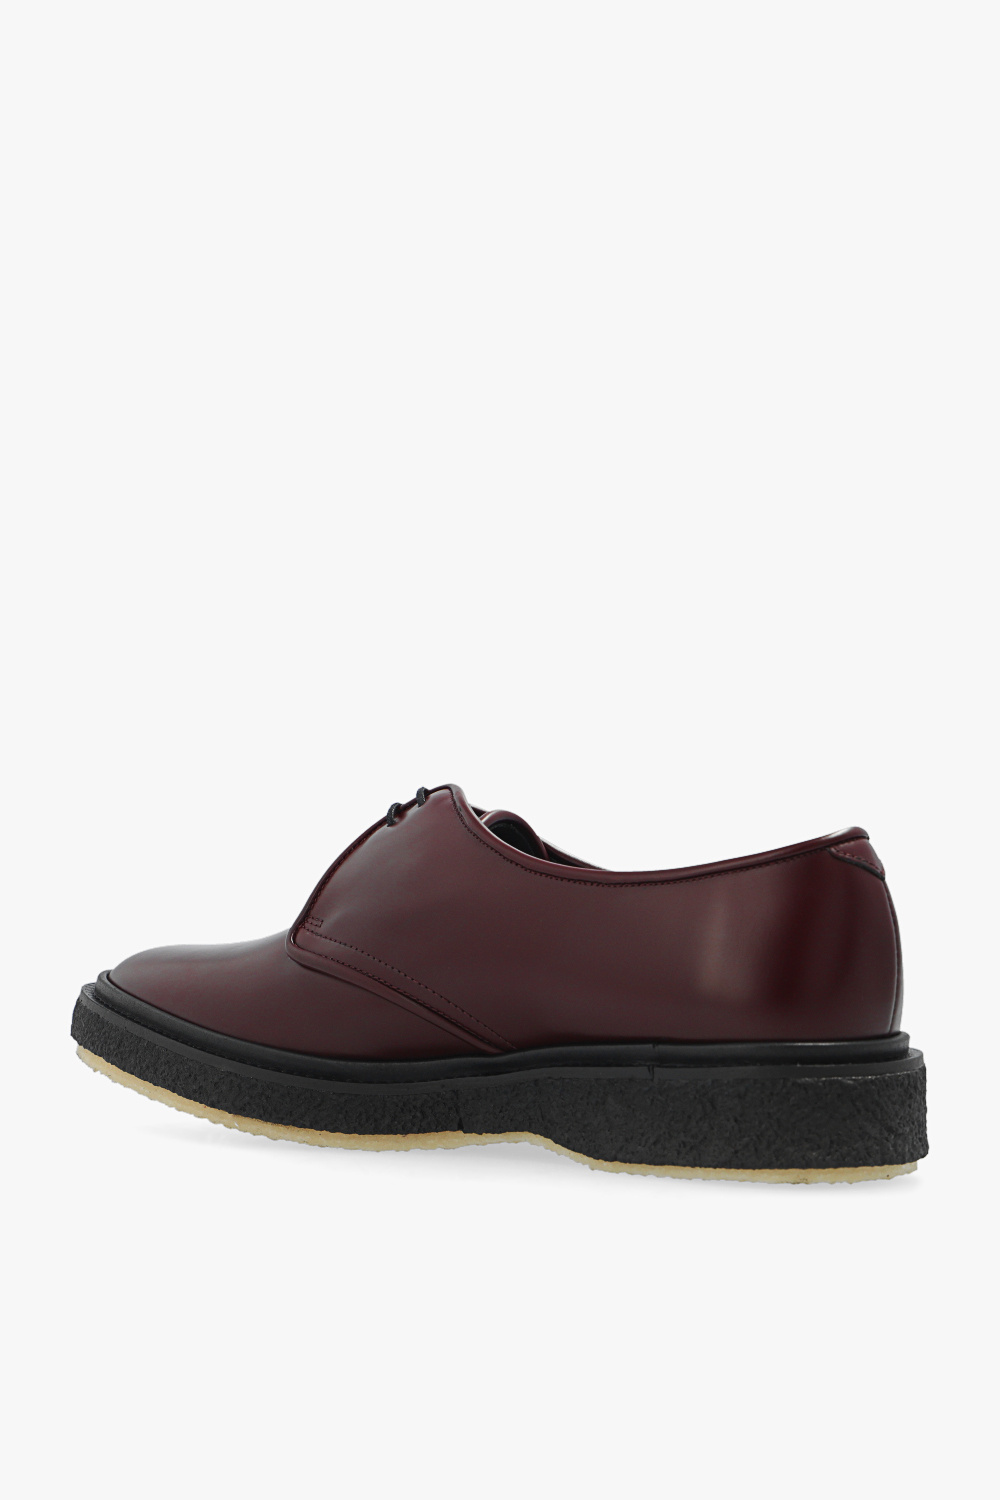 Adieu Paris ‘Type 1’ leather shoes